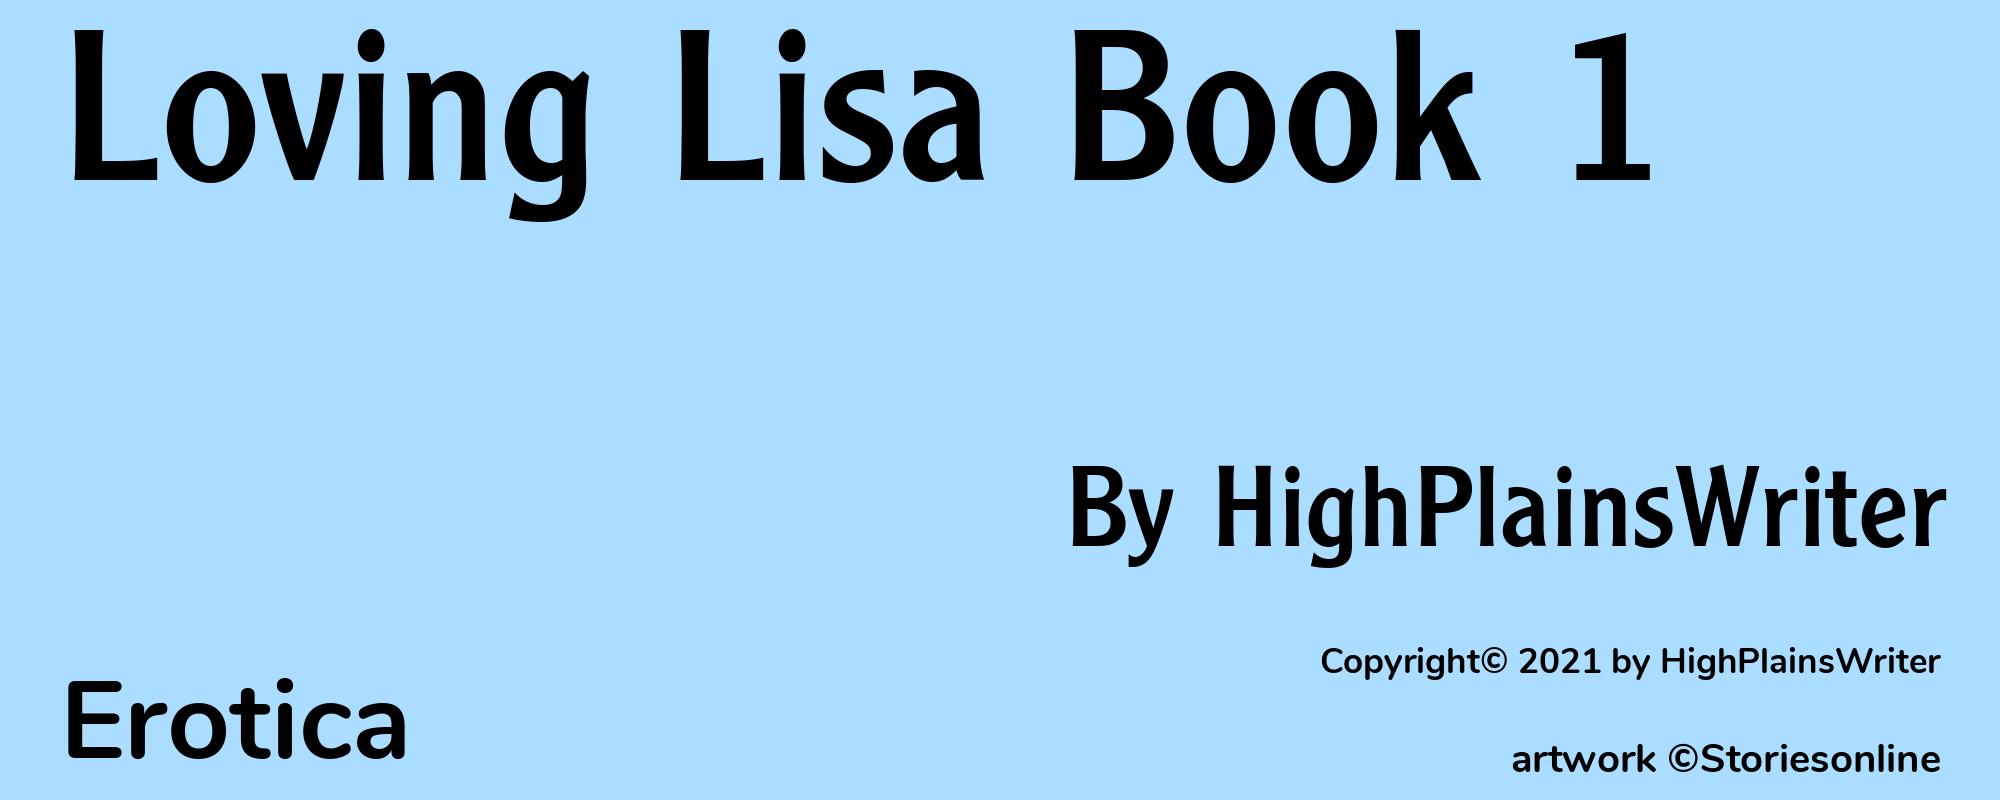 Loving Lisa Book 1 - Cover